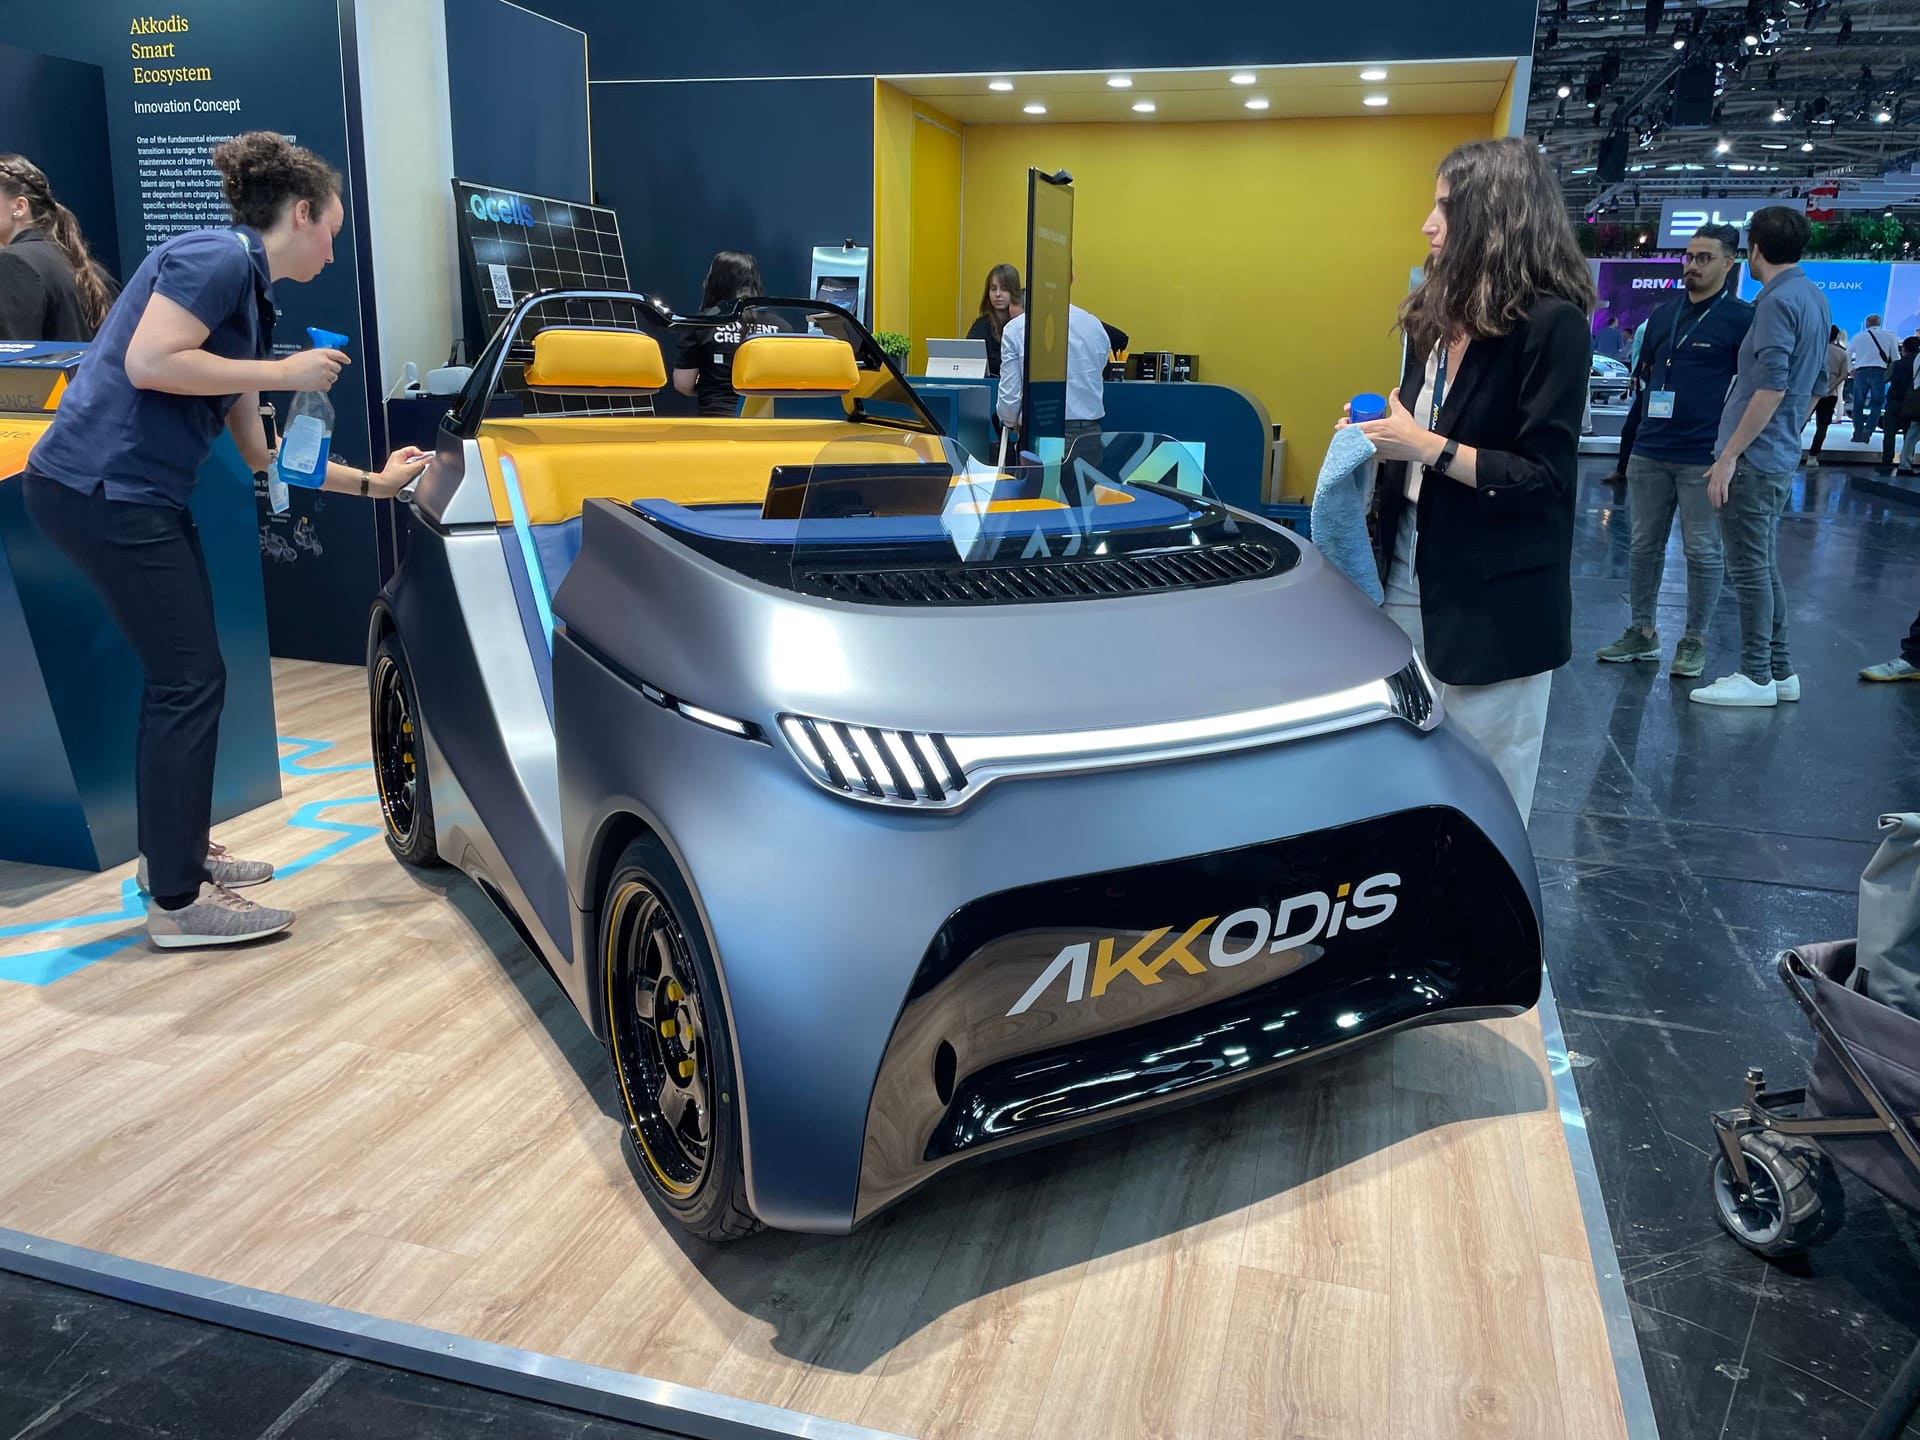 Das Konzeptfahrzeug von Akkodis: Die Batterie darin soll die E-Mobilität revolutionieren.